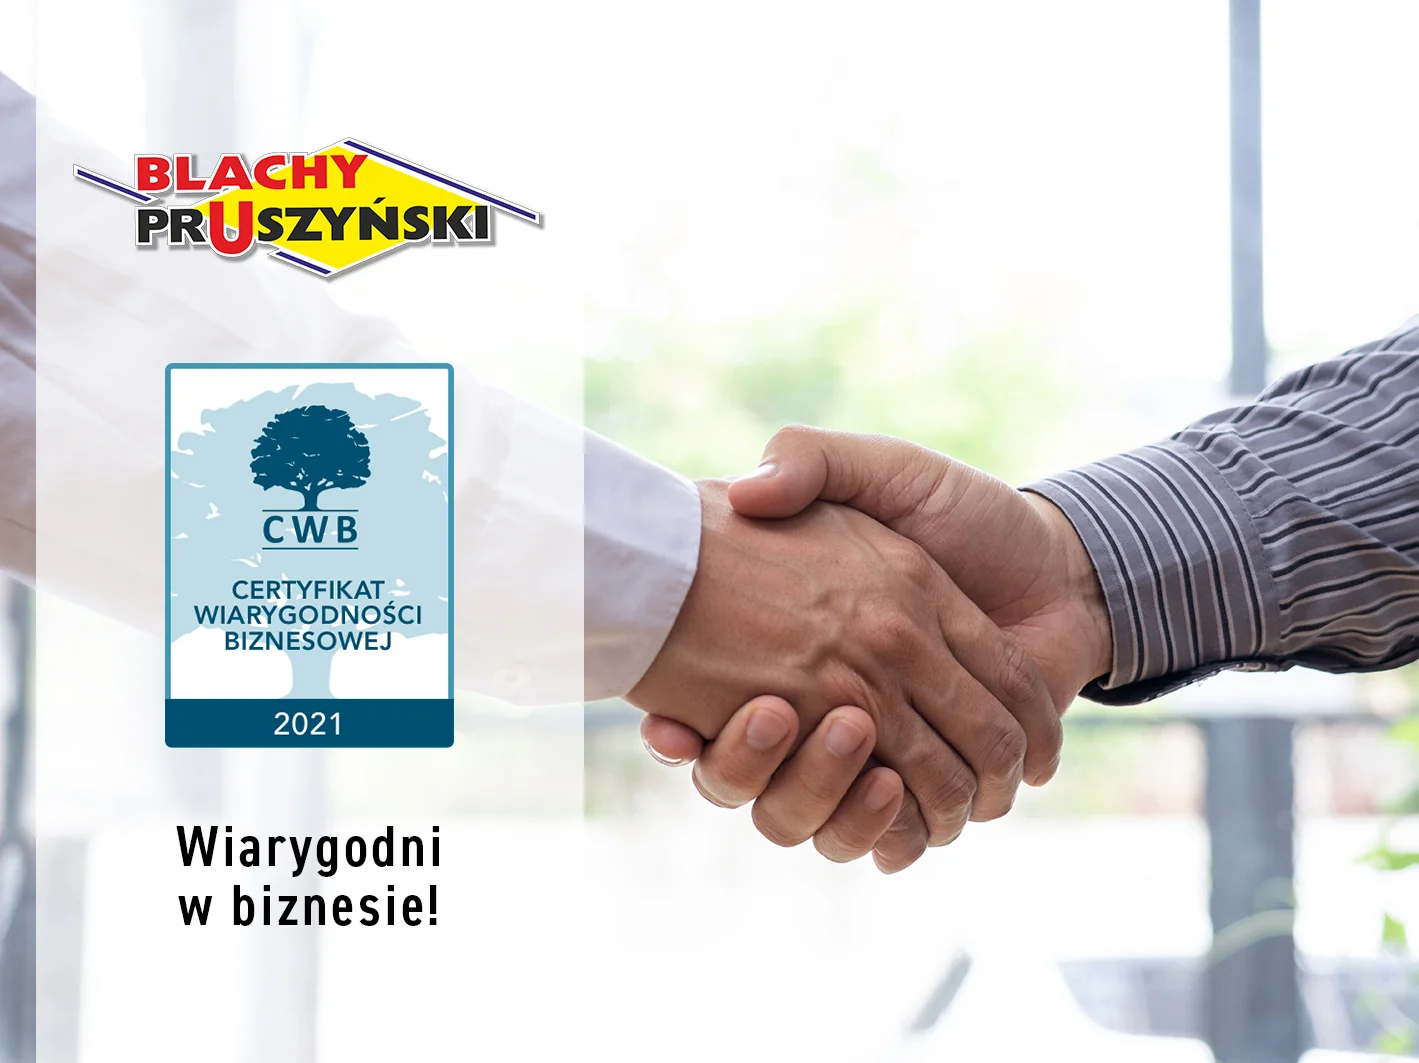 Certyfikat Wiarygodności Biznesowej za rok 2021 – uznanie dla firmy Blachy Pruszyński